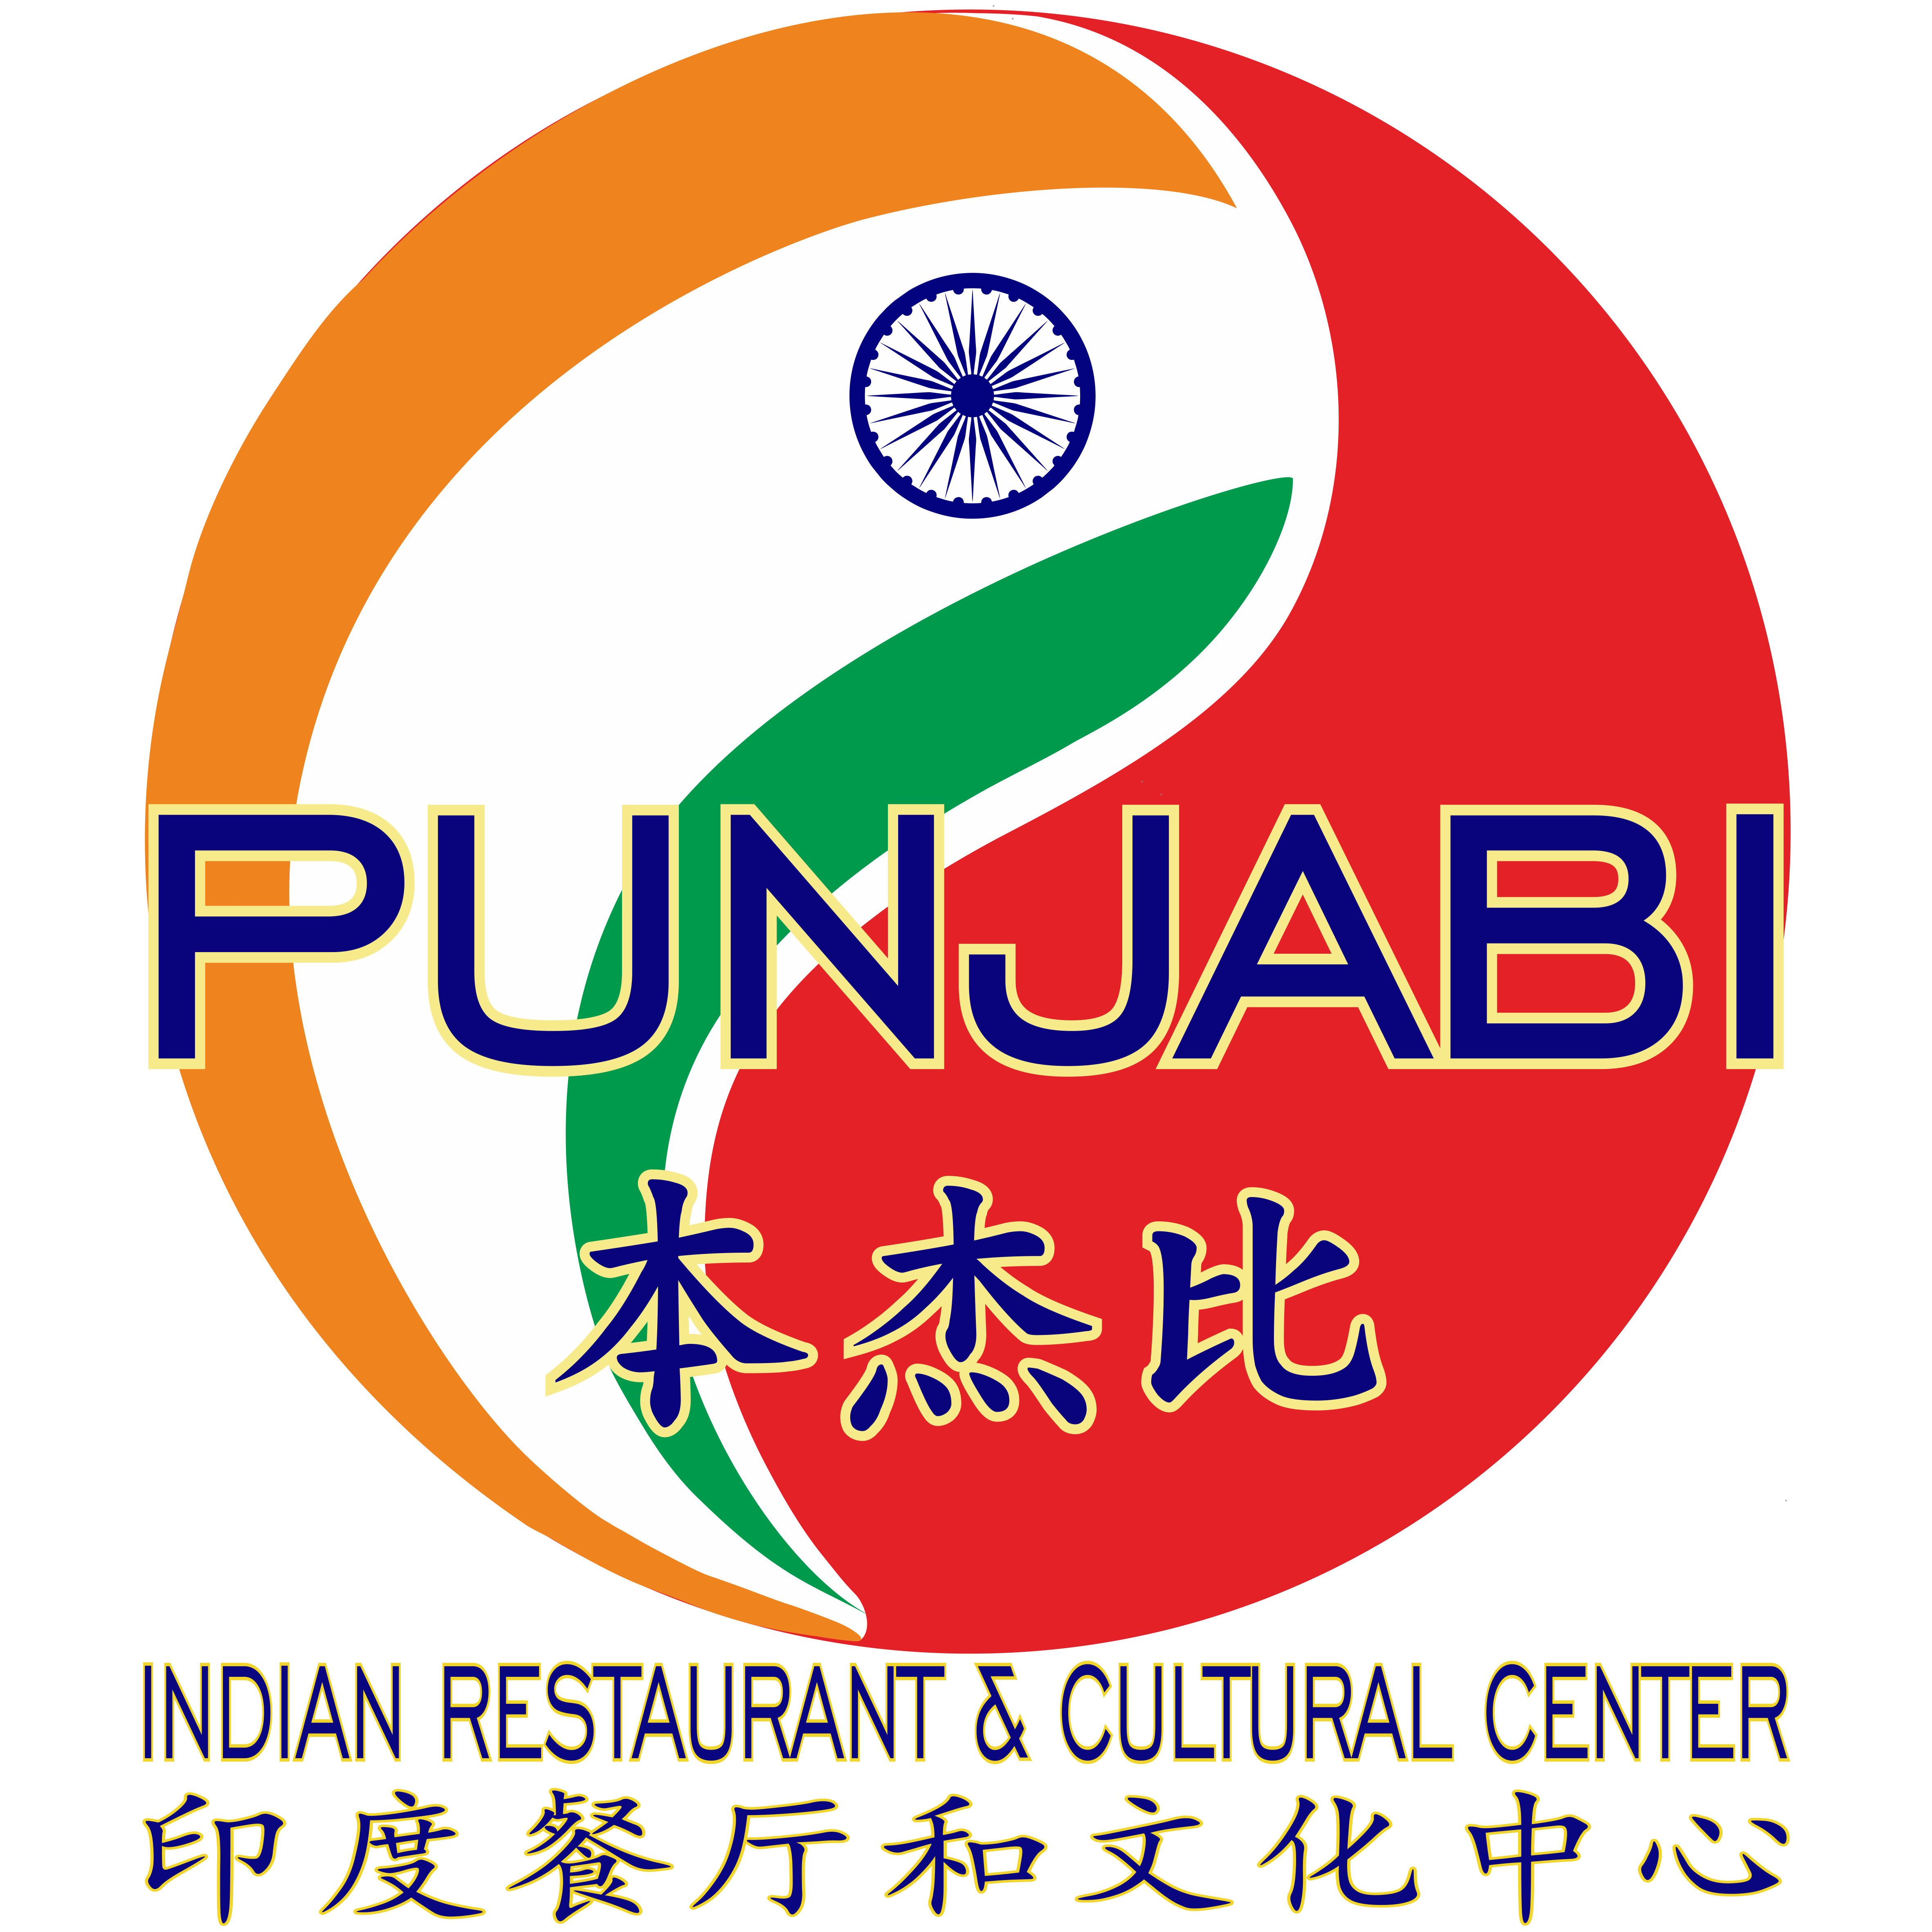 Punjabi Logo - Punjabi Indian Restaurant & Cultural Center 本杰比印度餐厅和文化中心 ...